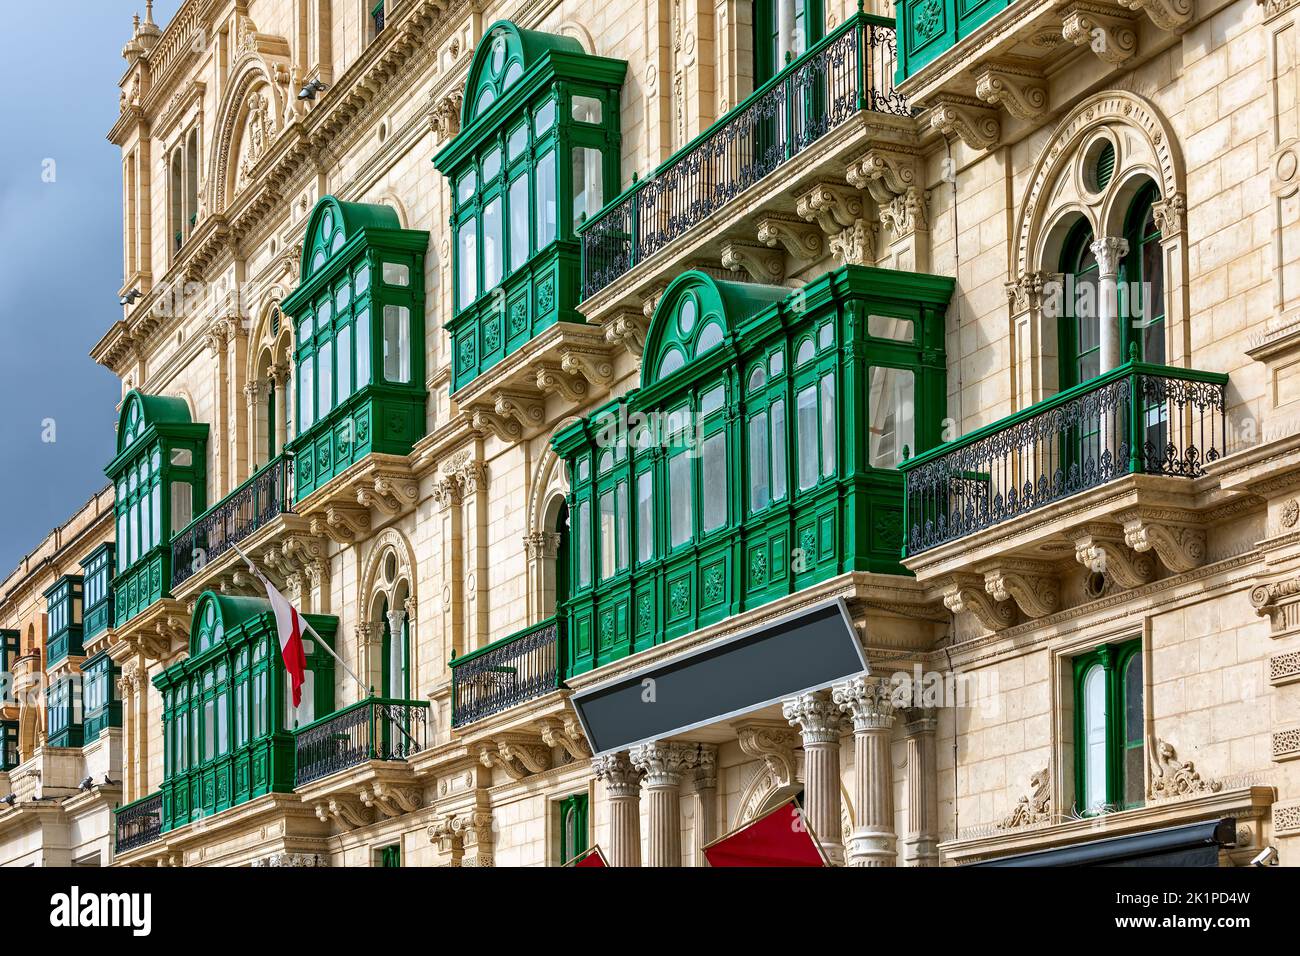 Frammento della facciata dell'edificio con tradizionali balconi decorati in legno dipinti in verde a Valletta, Malta. Foto Stock